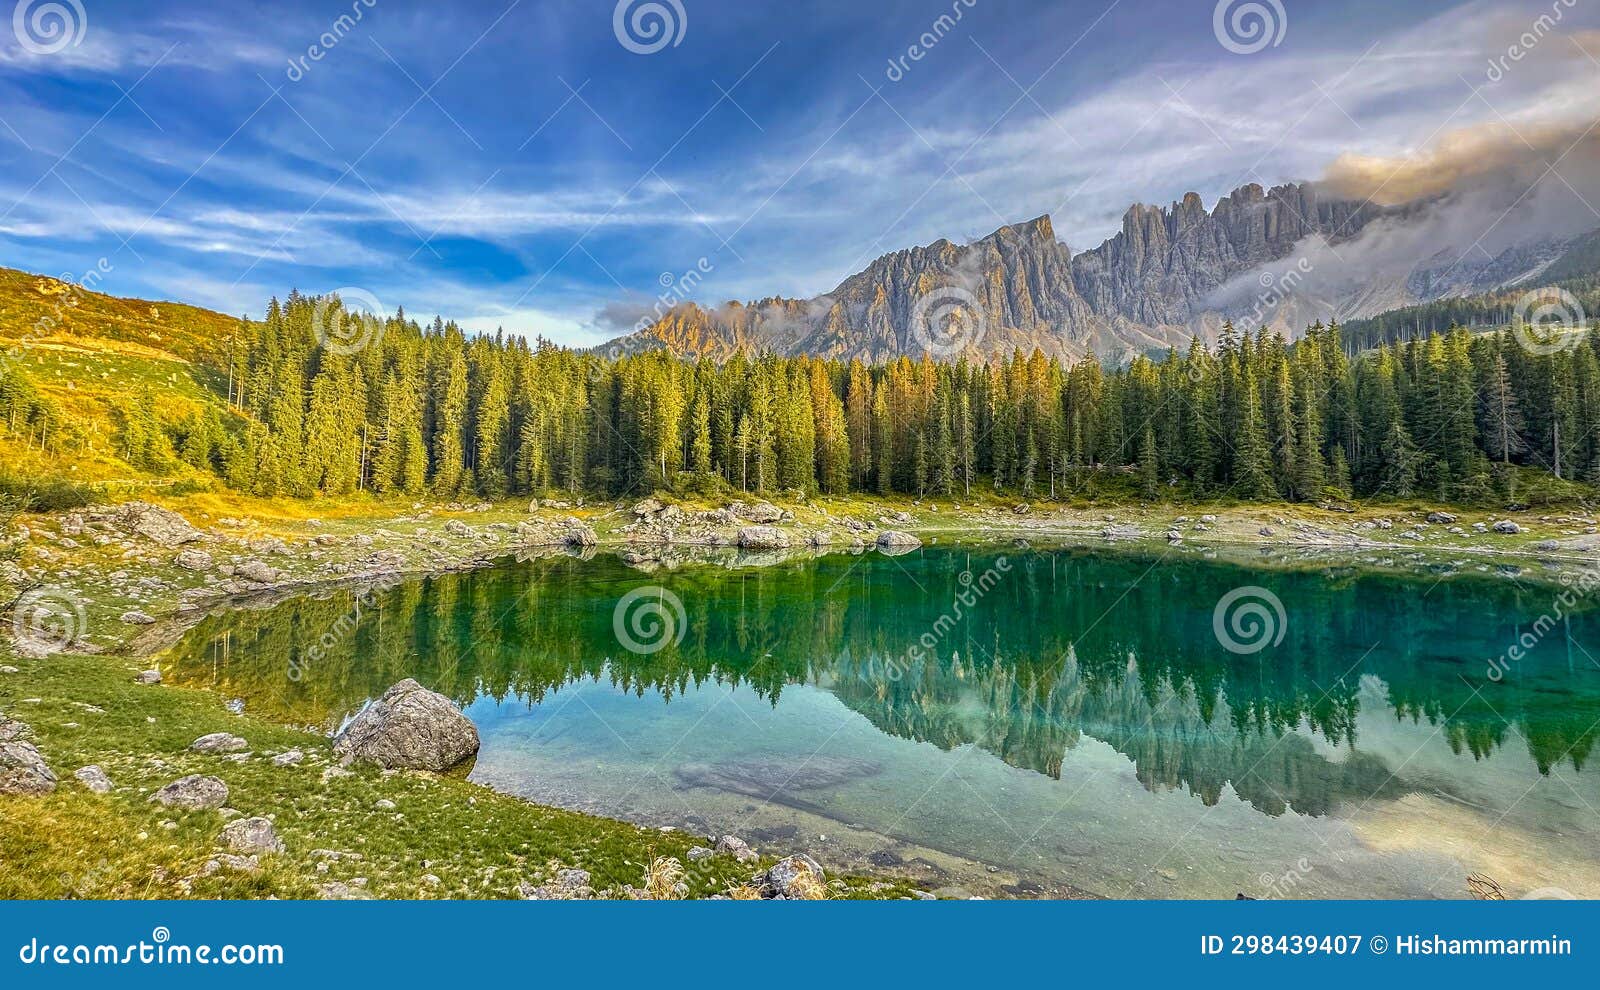 lago di carezza,graceful at 1,519m, an alpine gem with emerald waters